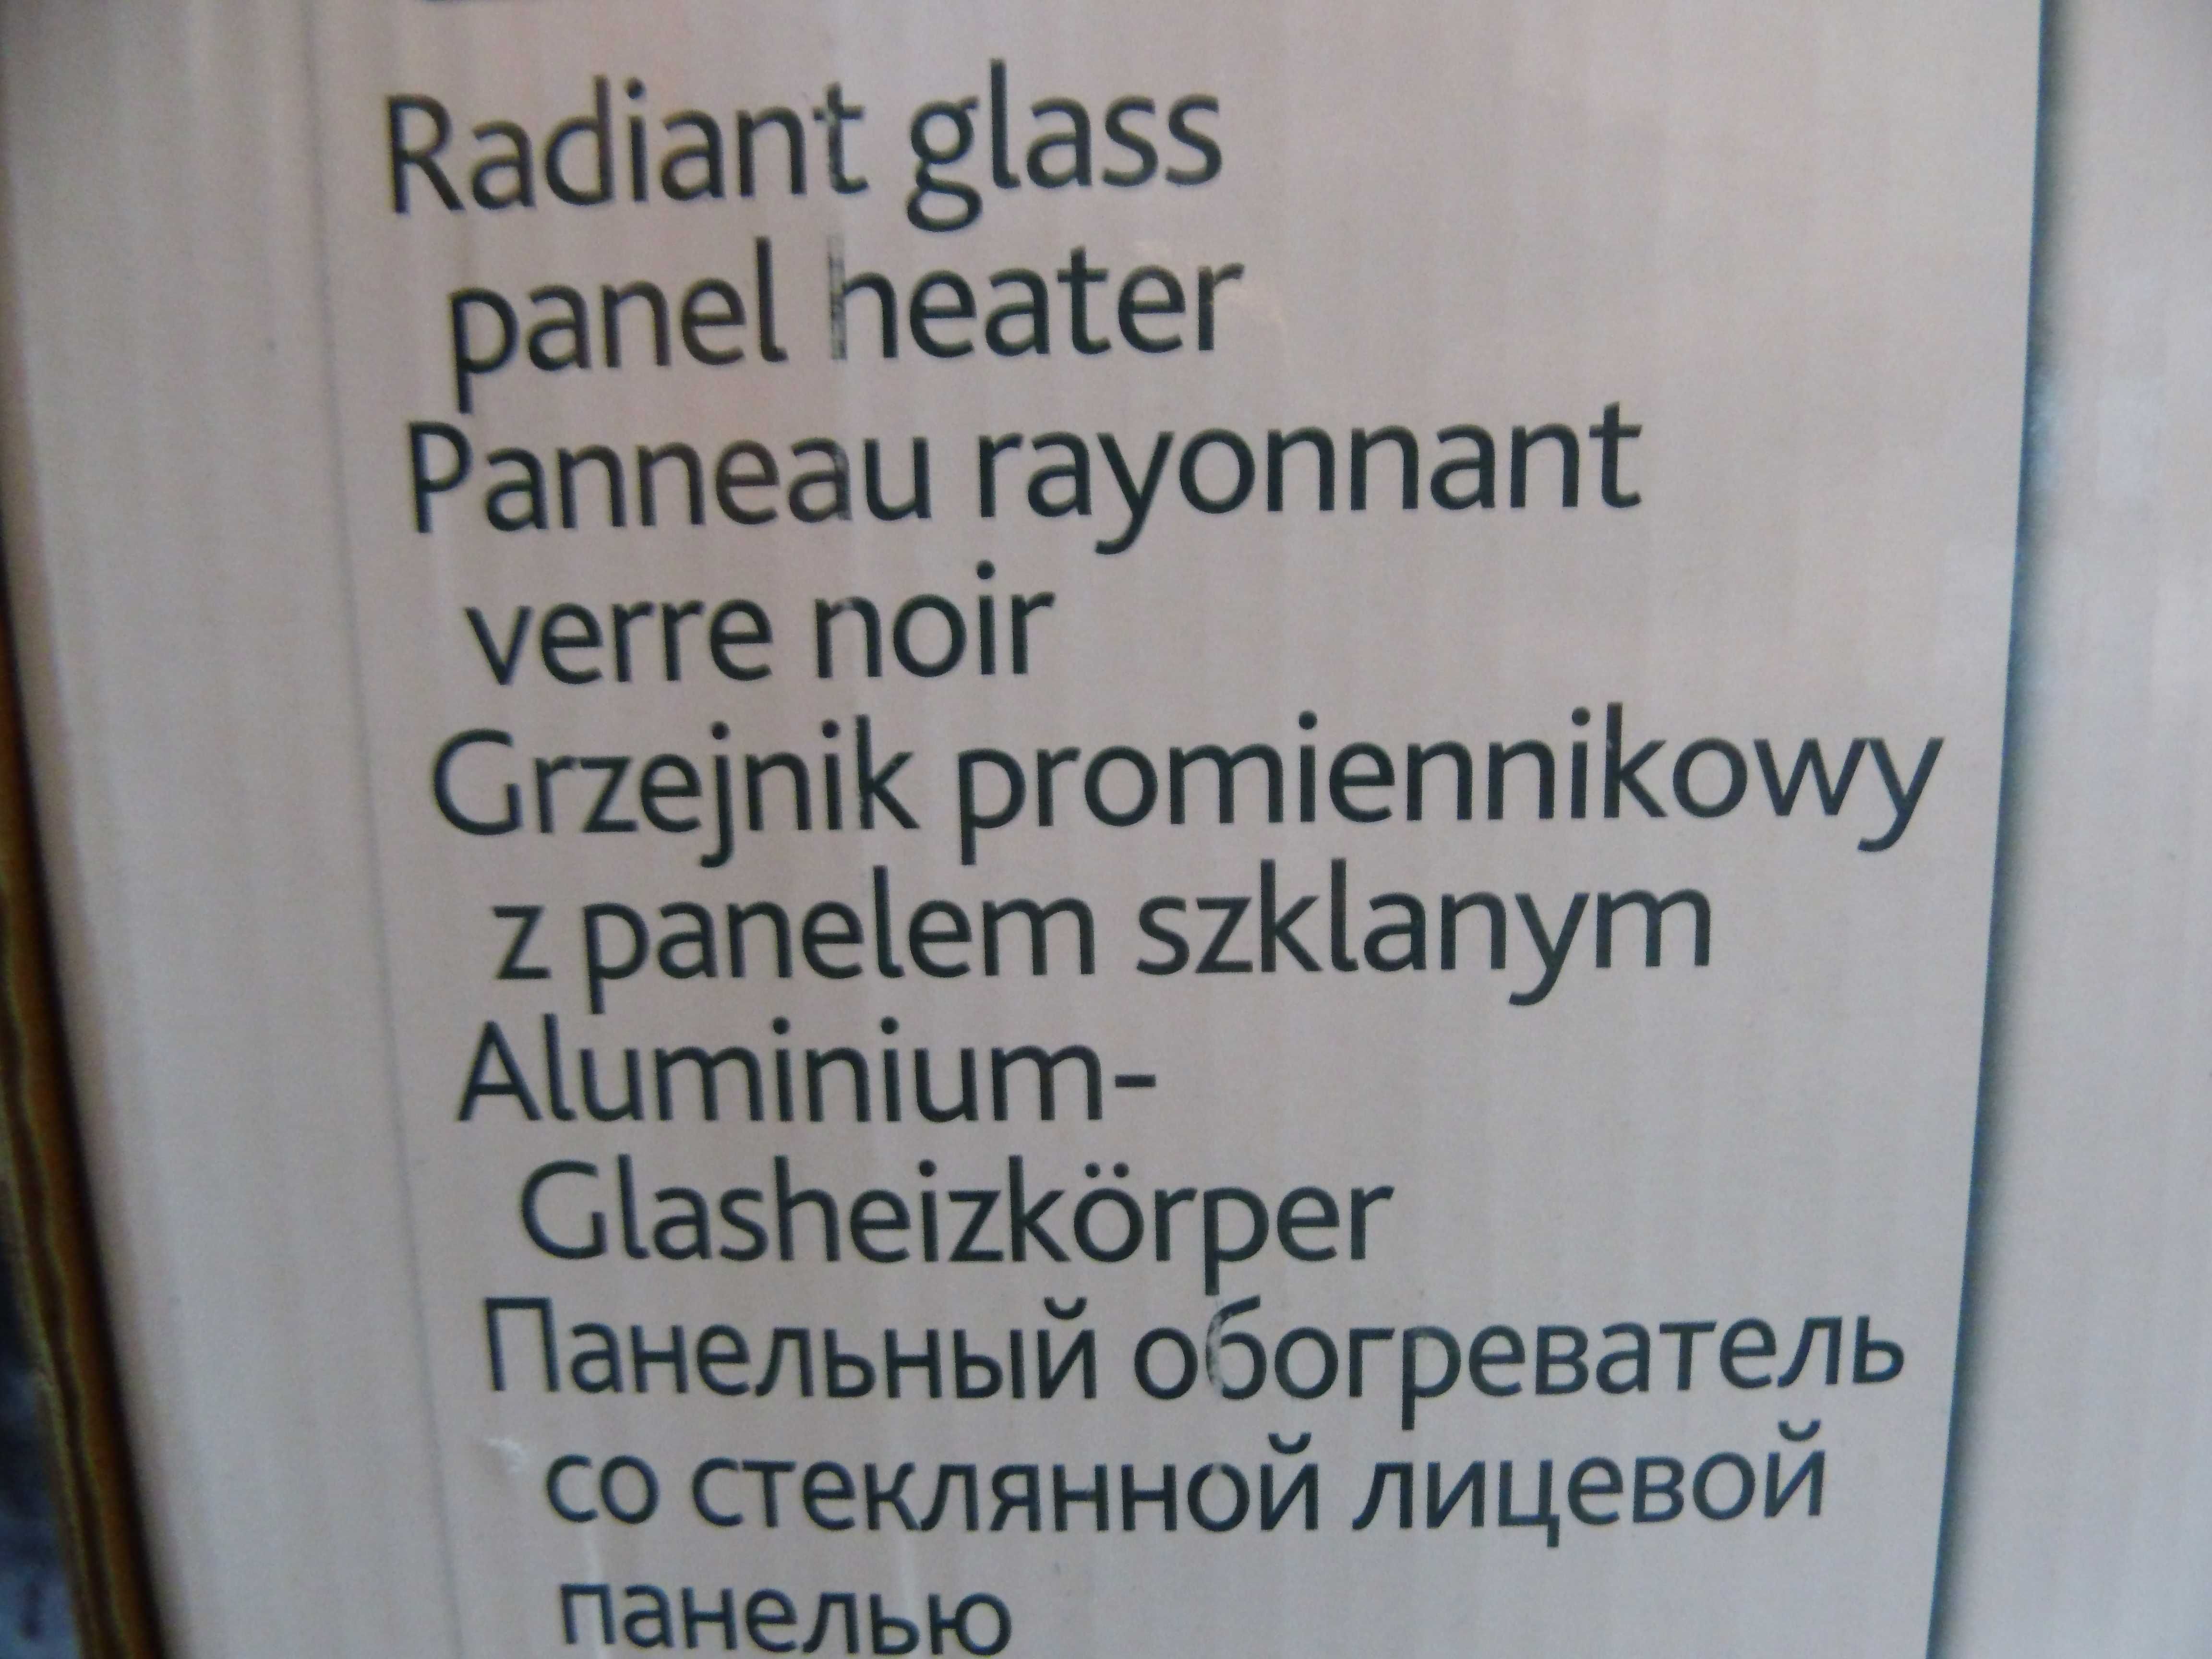 Grzejnik promiennikowy z panelem szklanym